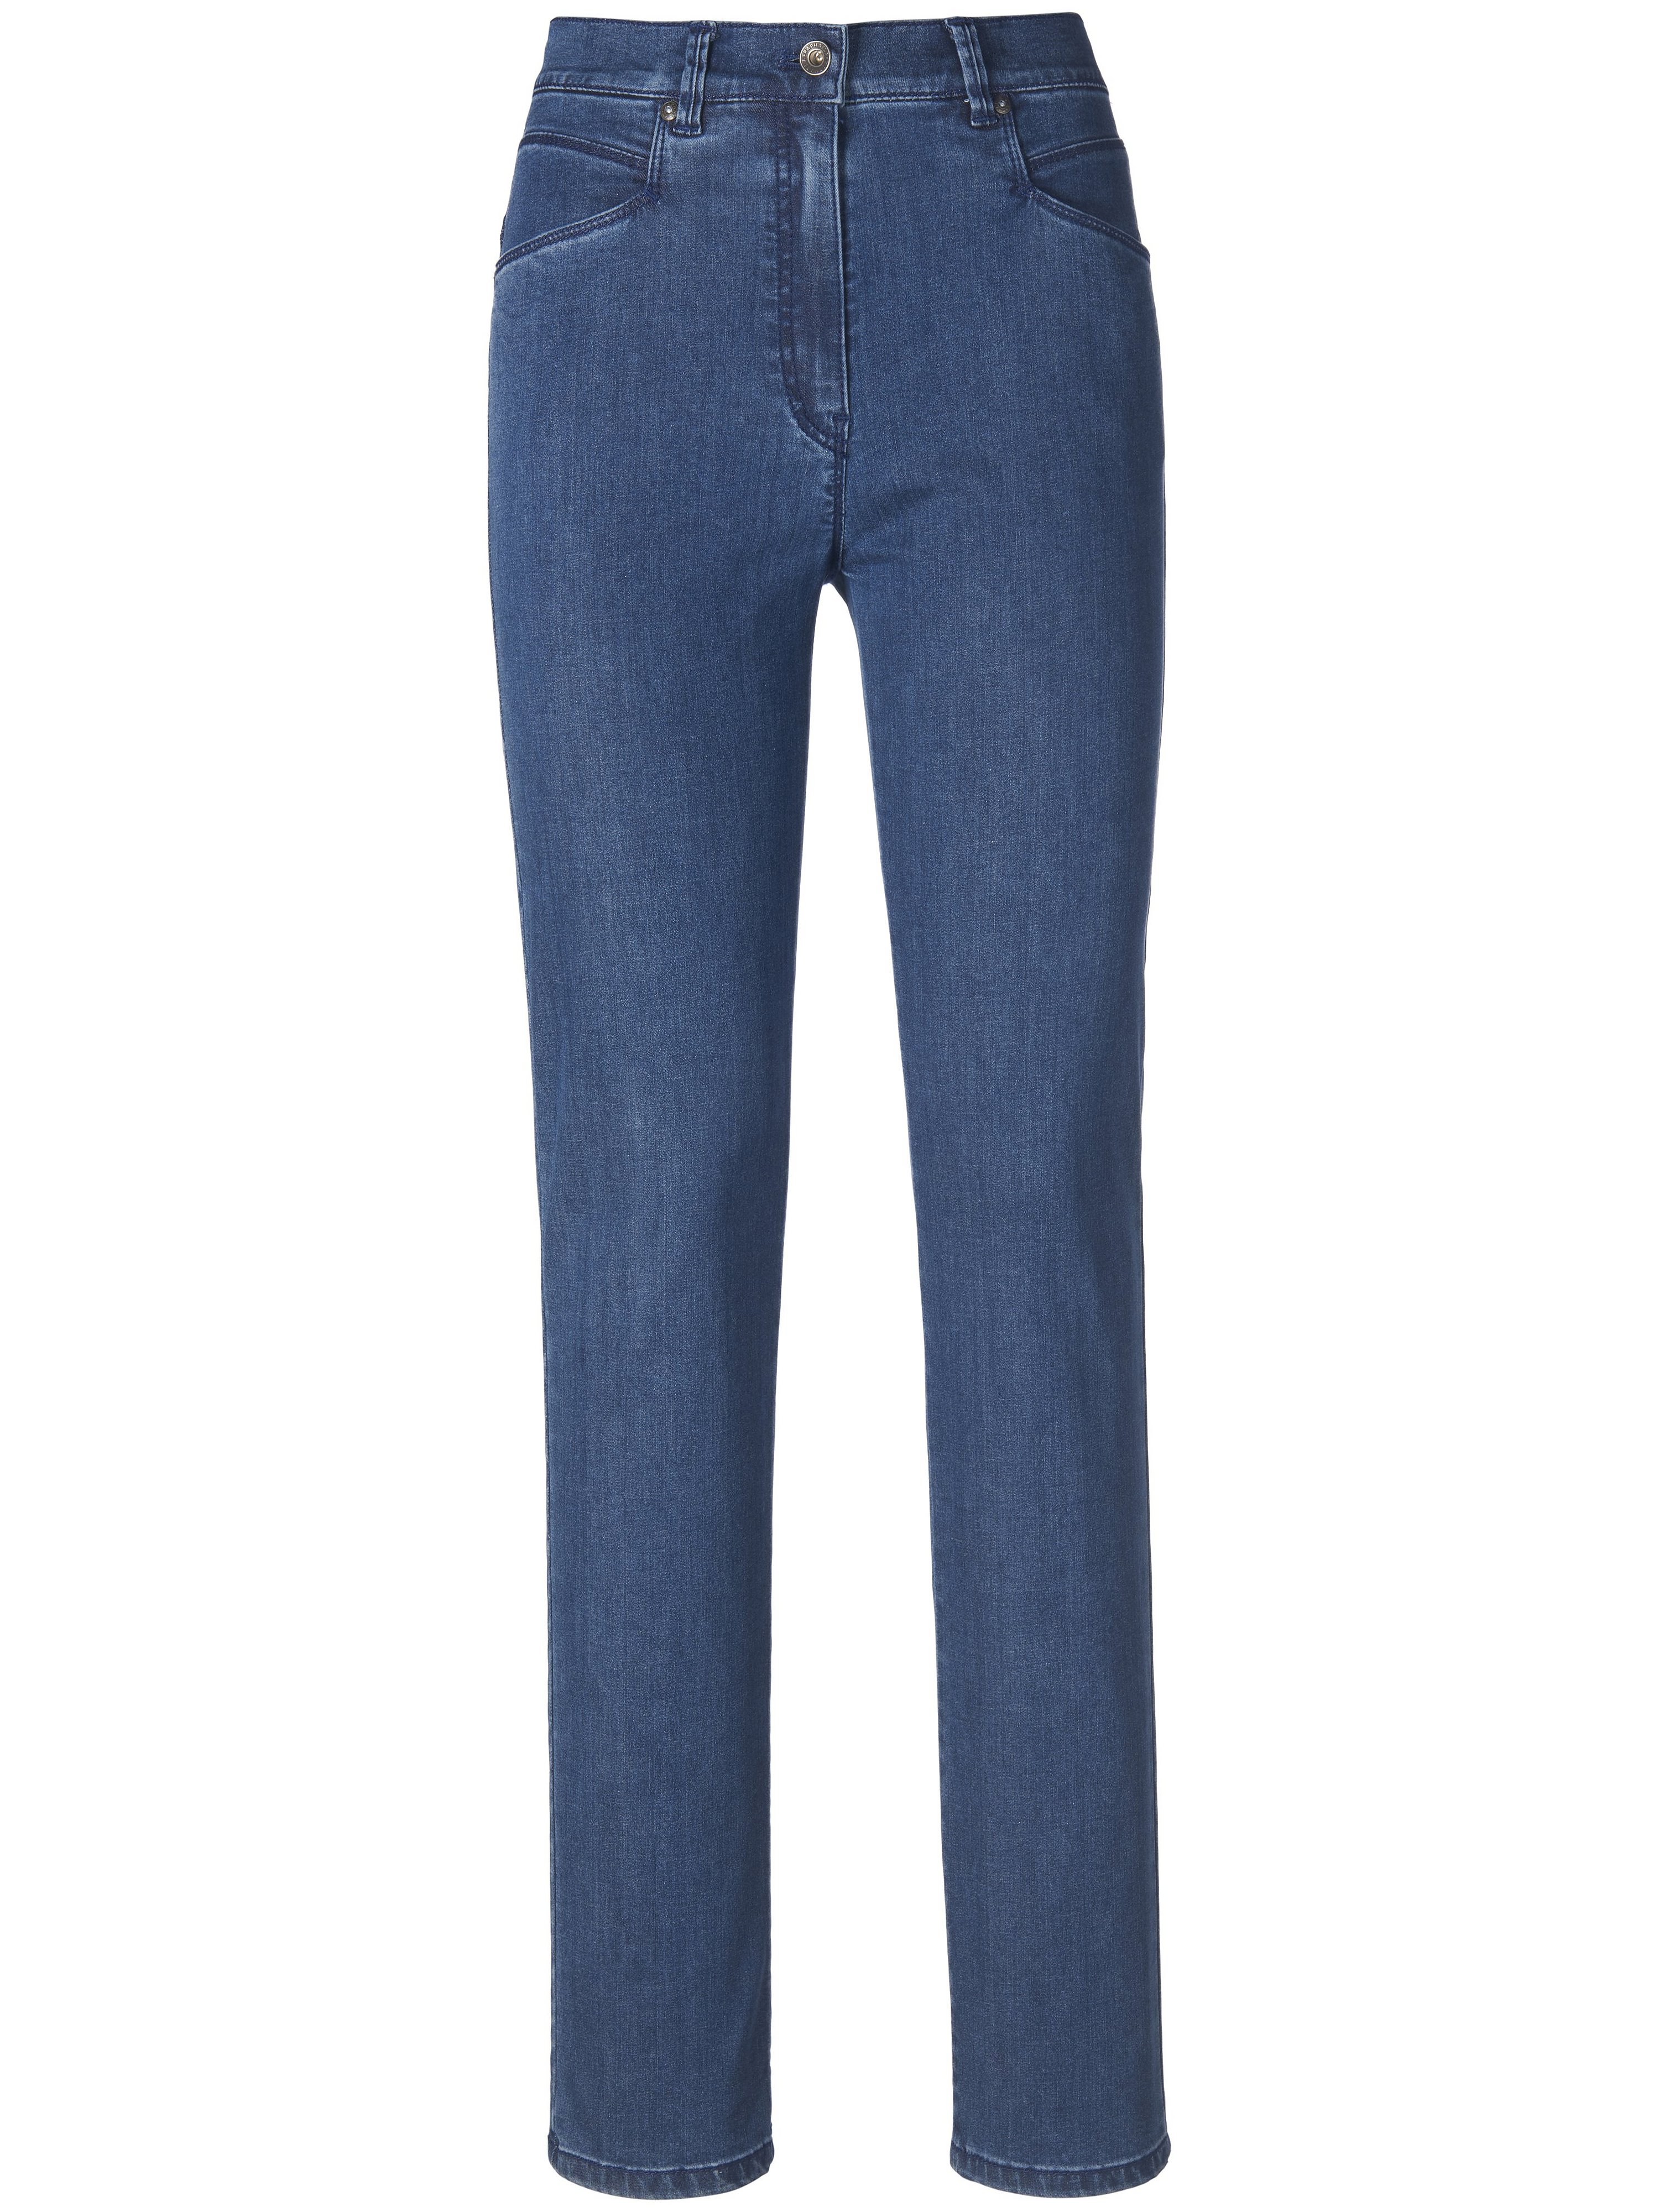 Corrigerende Comfort Plus-jeans model Caren Van Raphaela by Brax denim